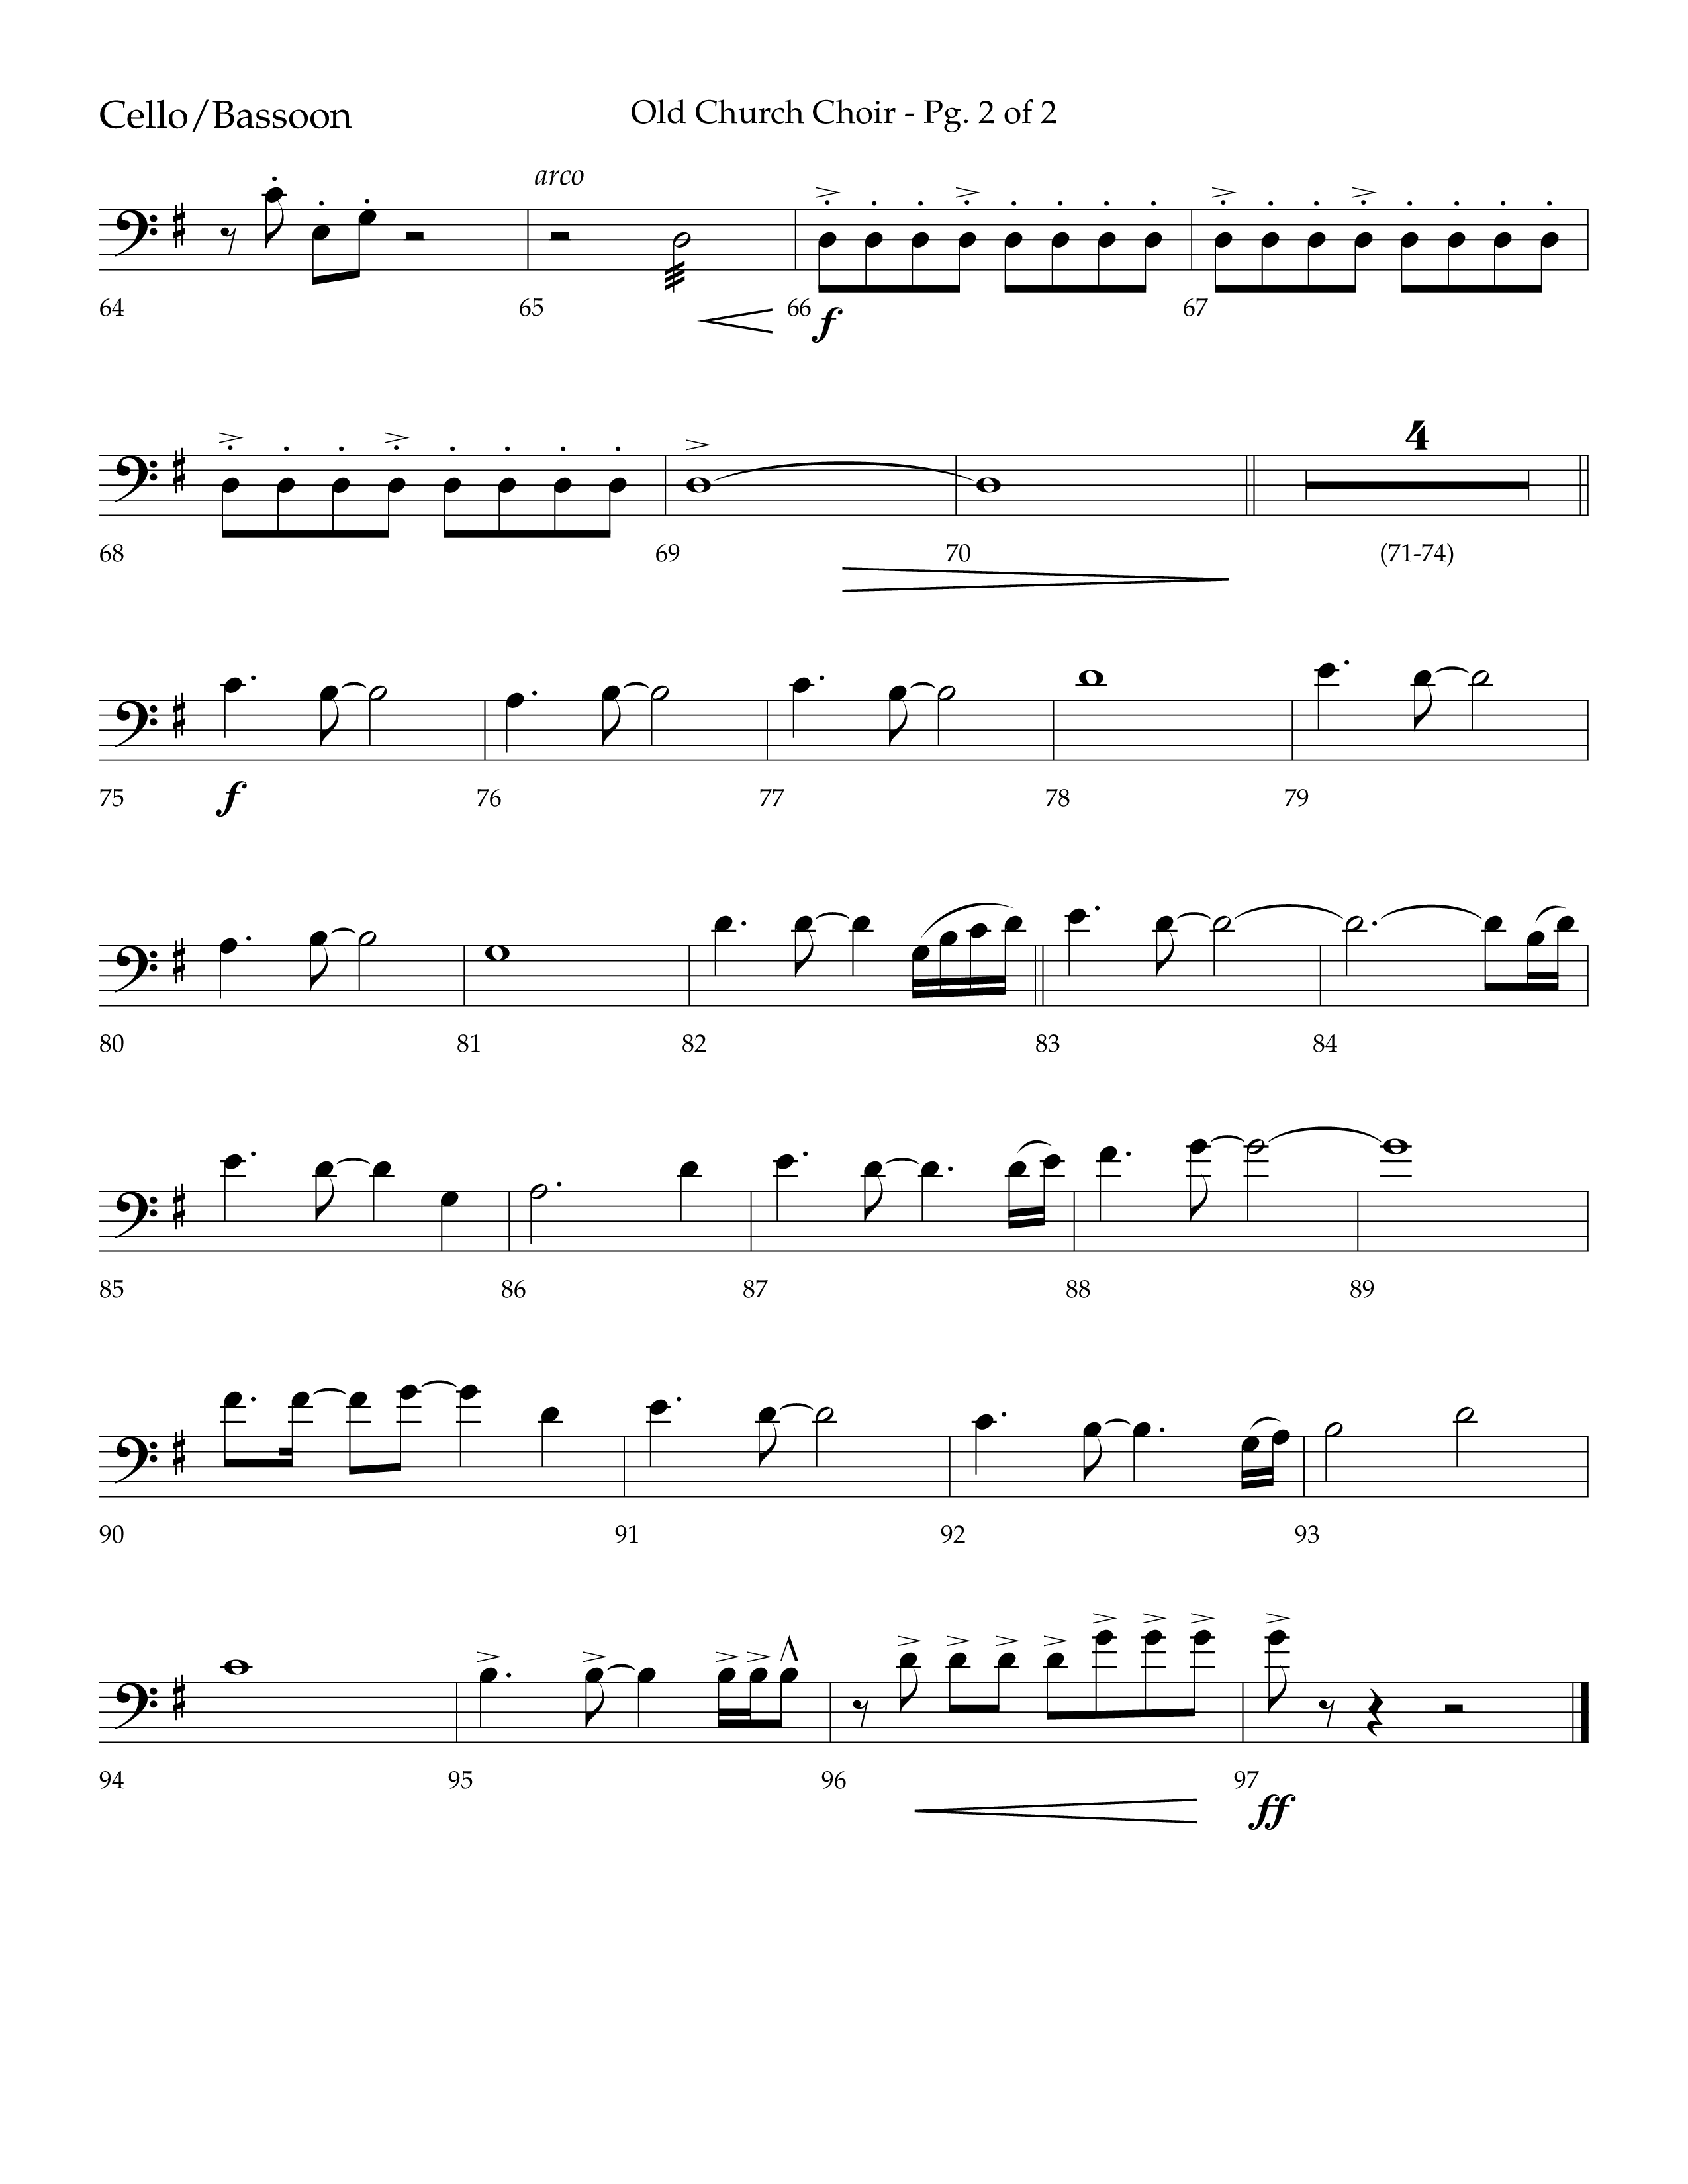 Old Church Choir (Choral Anthem SATB) Cello (Lifeway Choral / Arr. Ken Barker / Arr. Craig Adams / Arr. Danny Zaloudik)